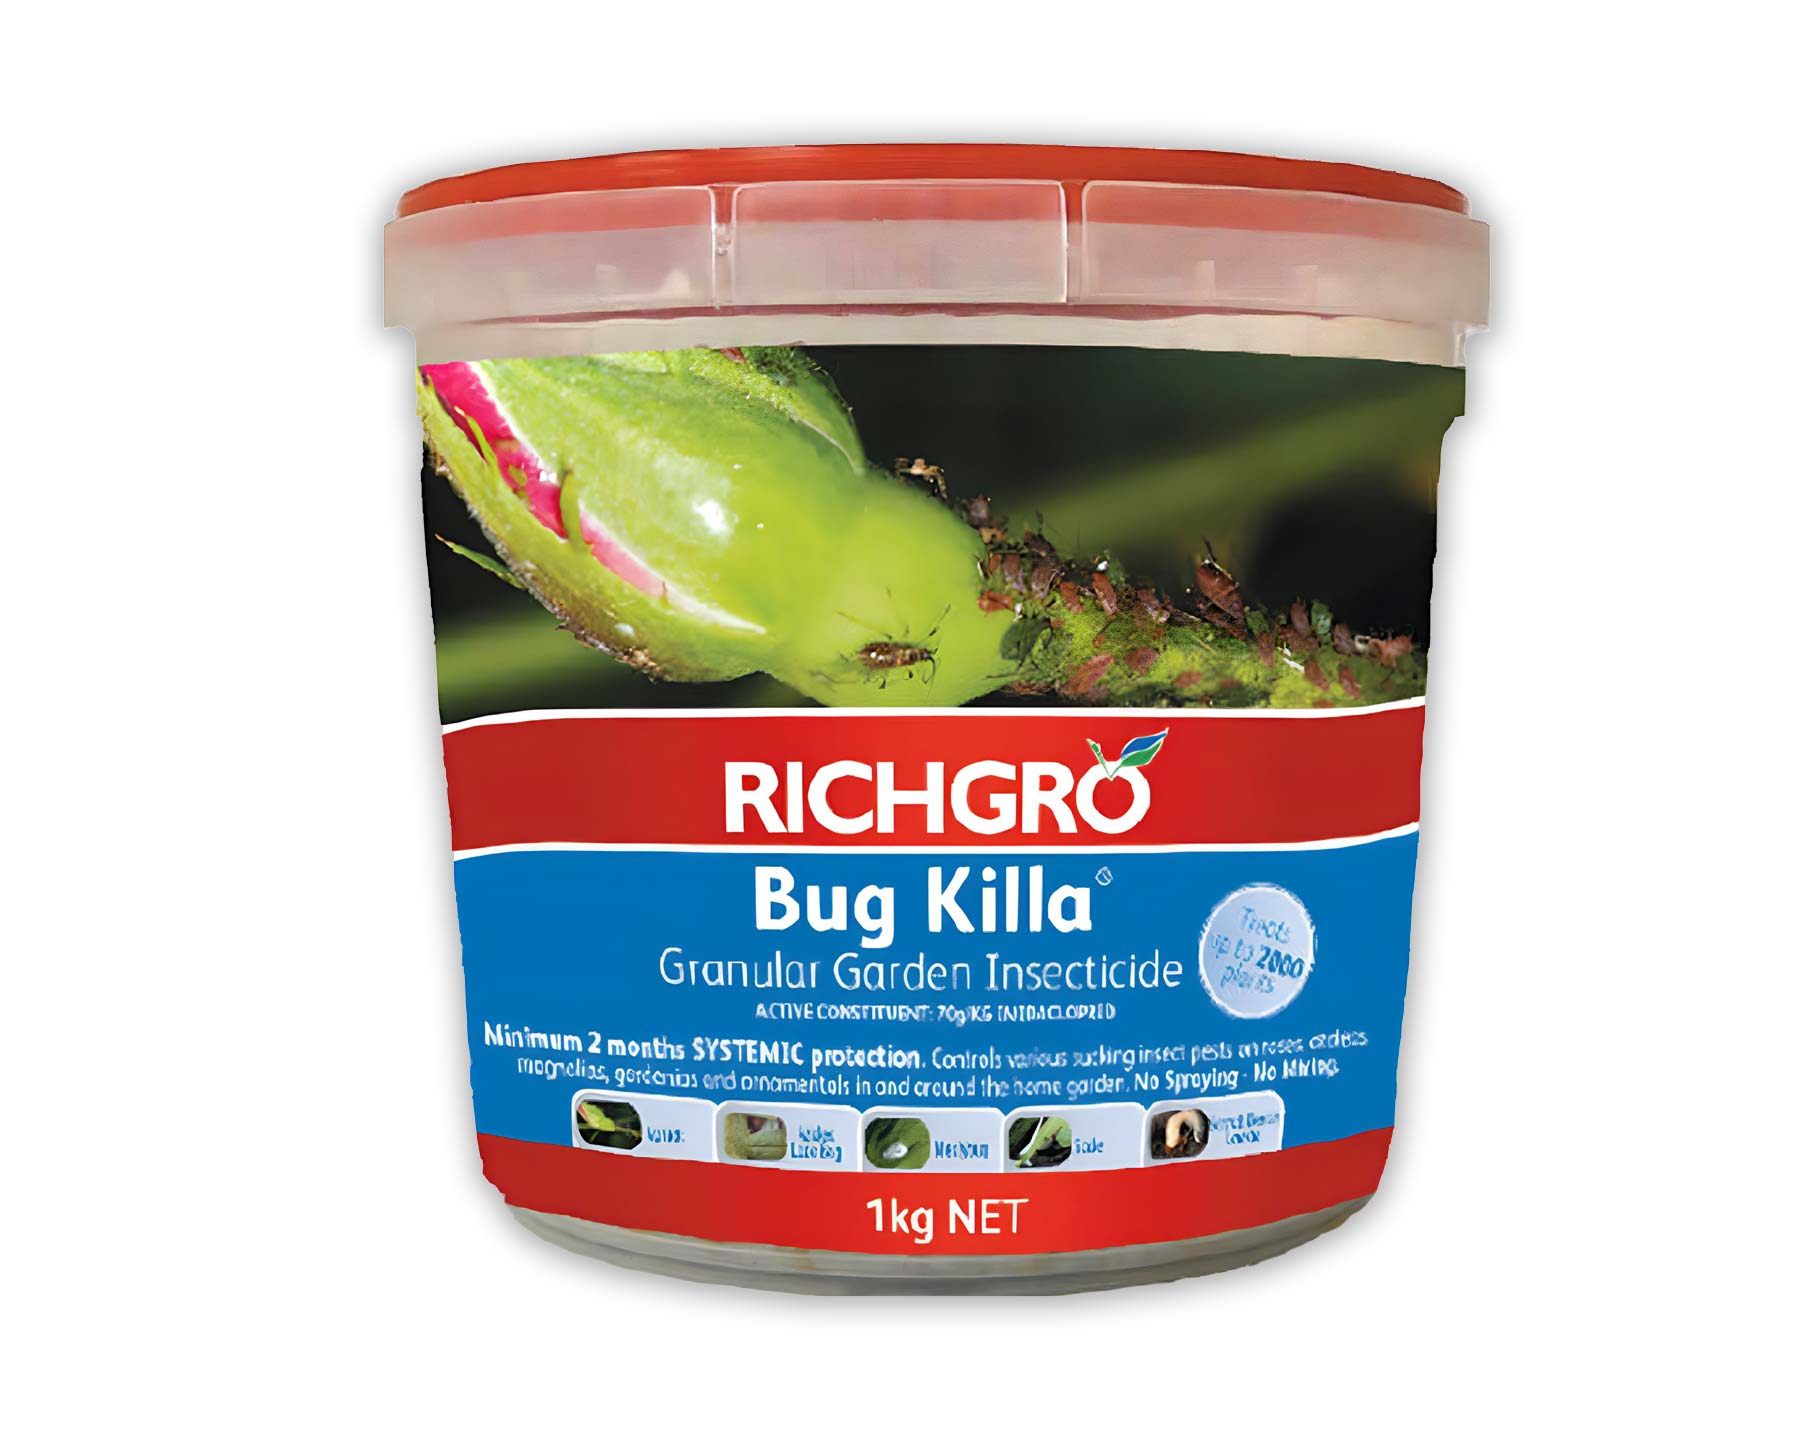 Richgro Bug Killa in 1kg pack